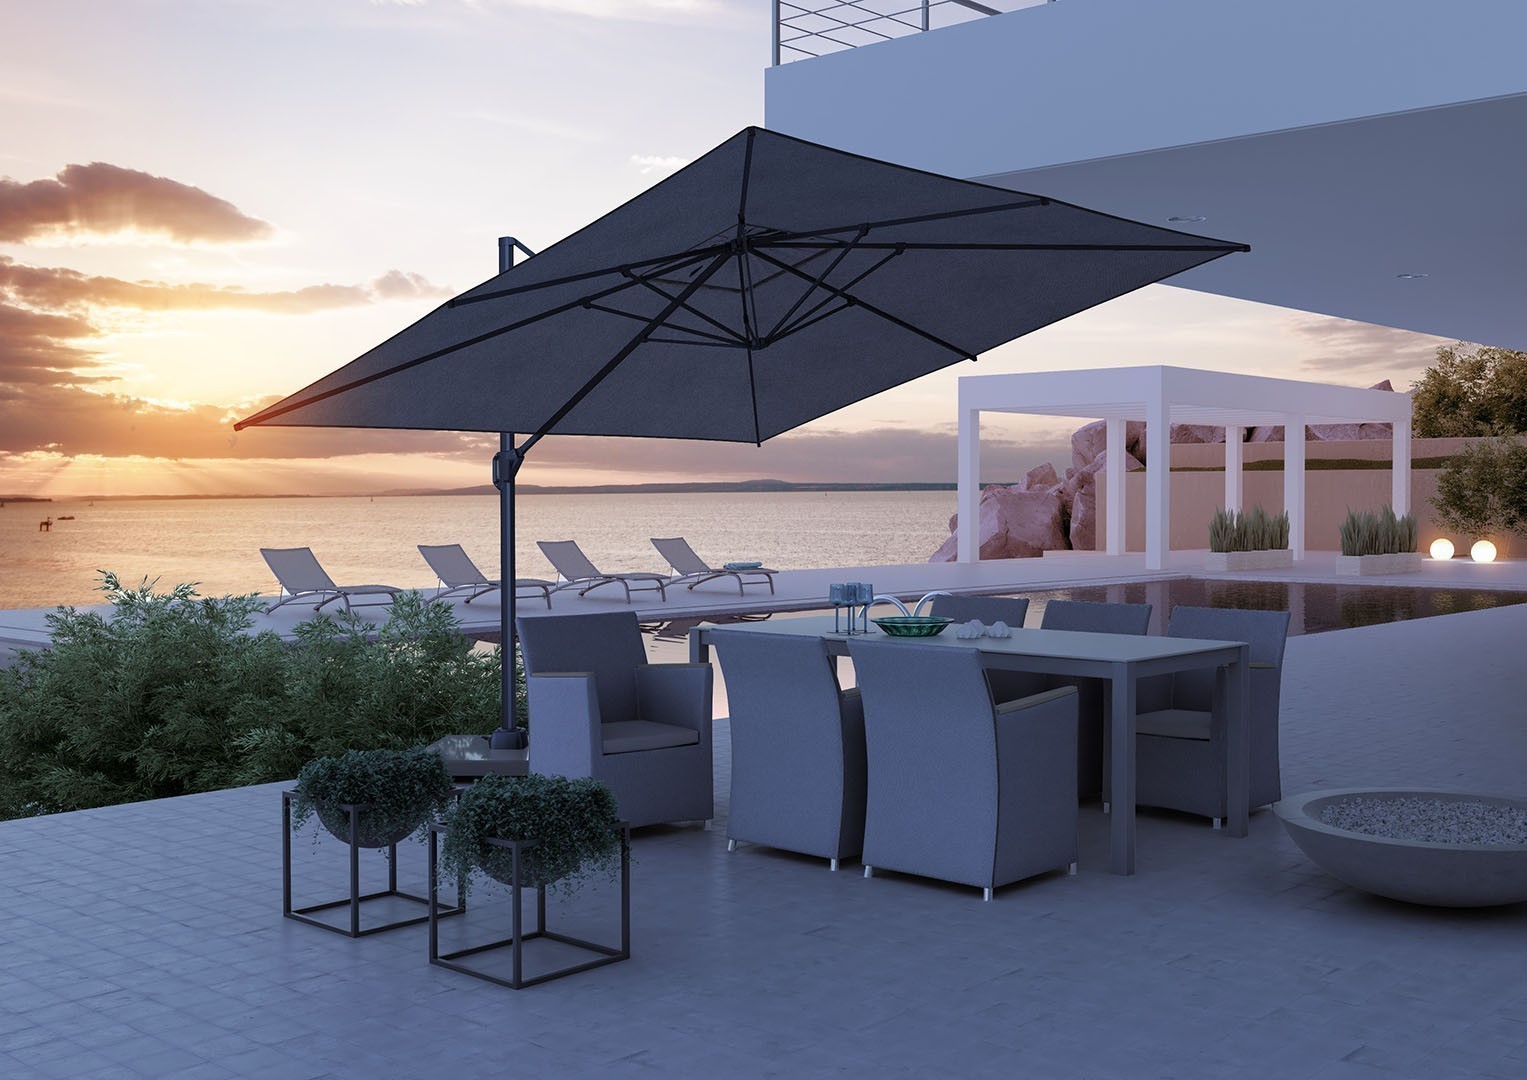 Fotele na balkon – wybieramy produkt idealny!